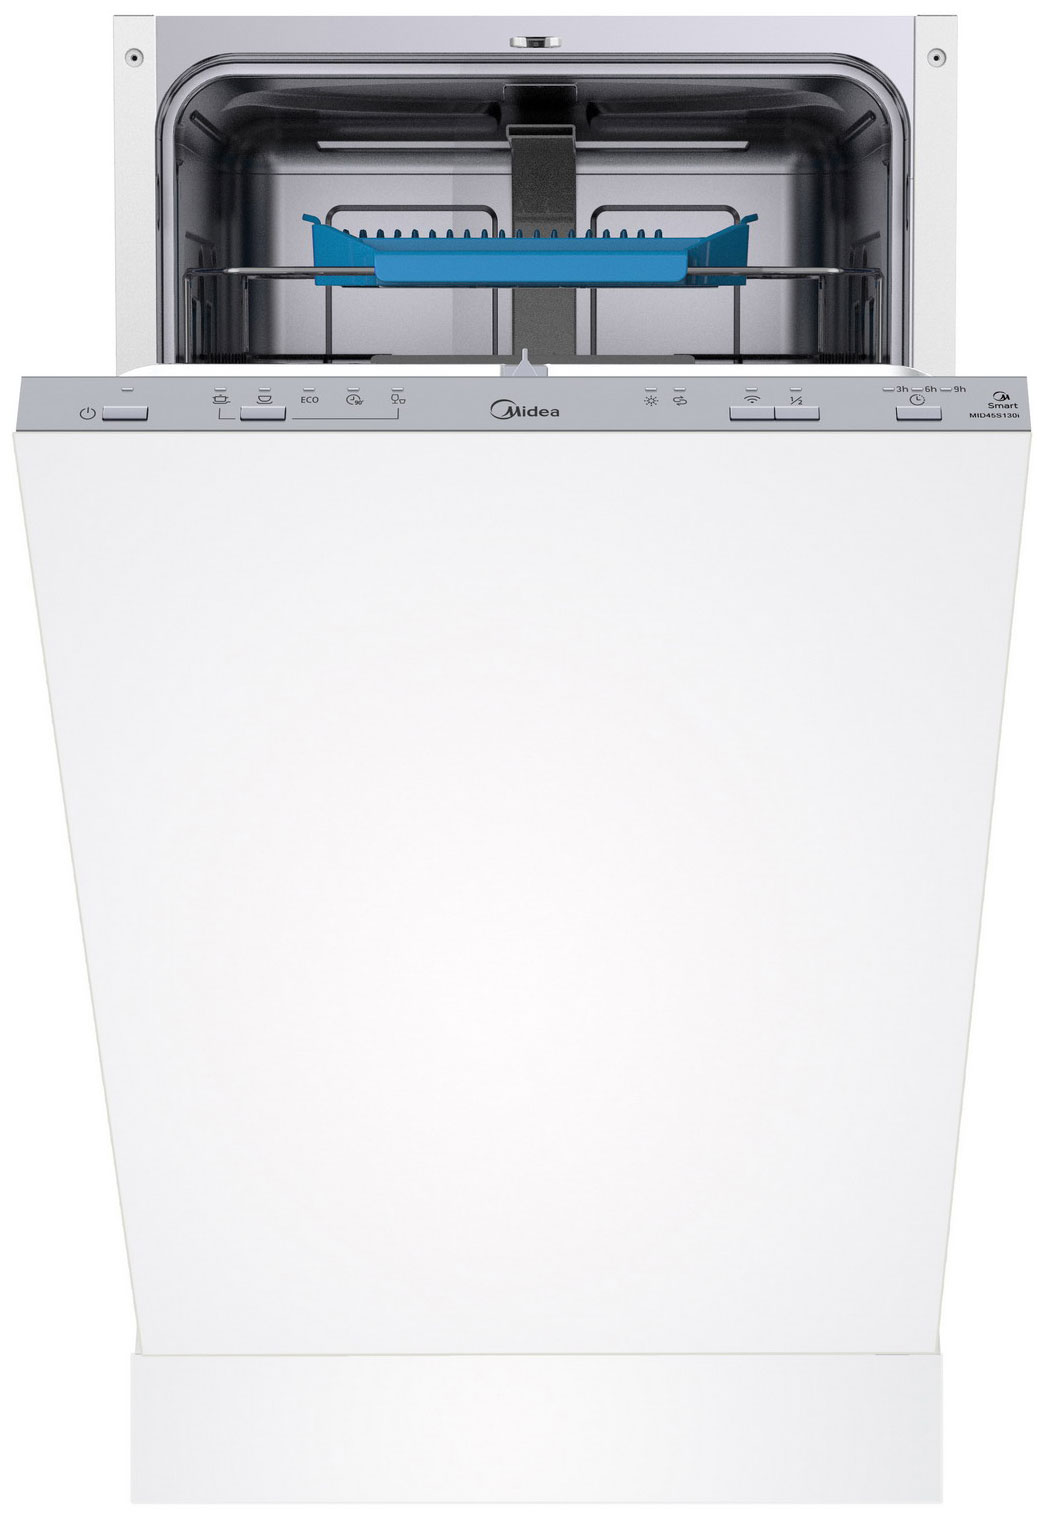 Встраиваемая посудомоечная машина Midea MID45S130i встраиваемая посудомоечная машина midea mid45s450i